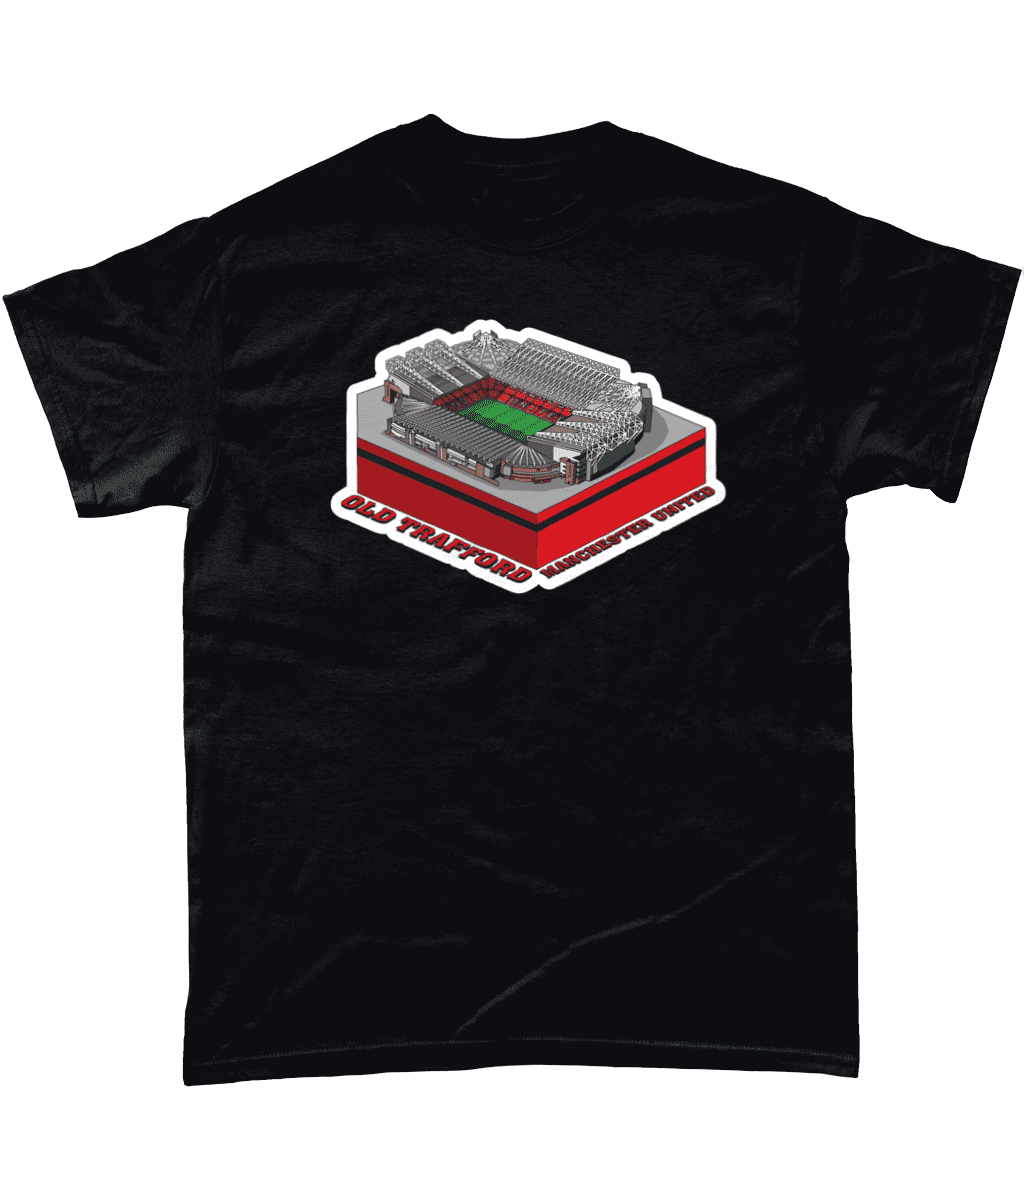 Manchester United old Trafford Football Stadium Illustration T Shirt Black